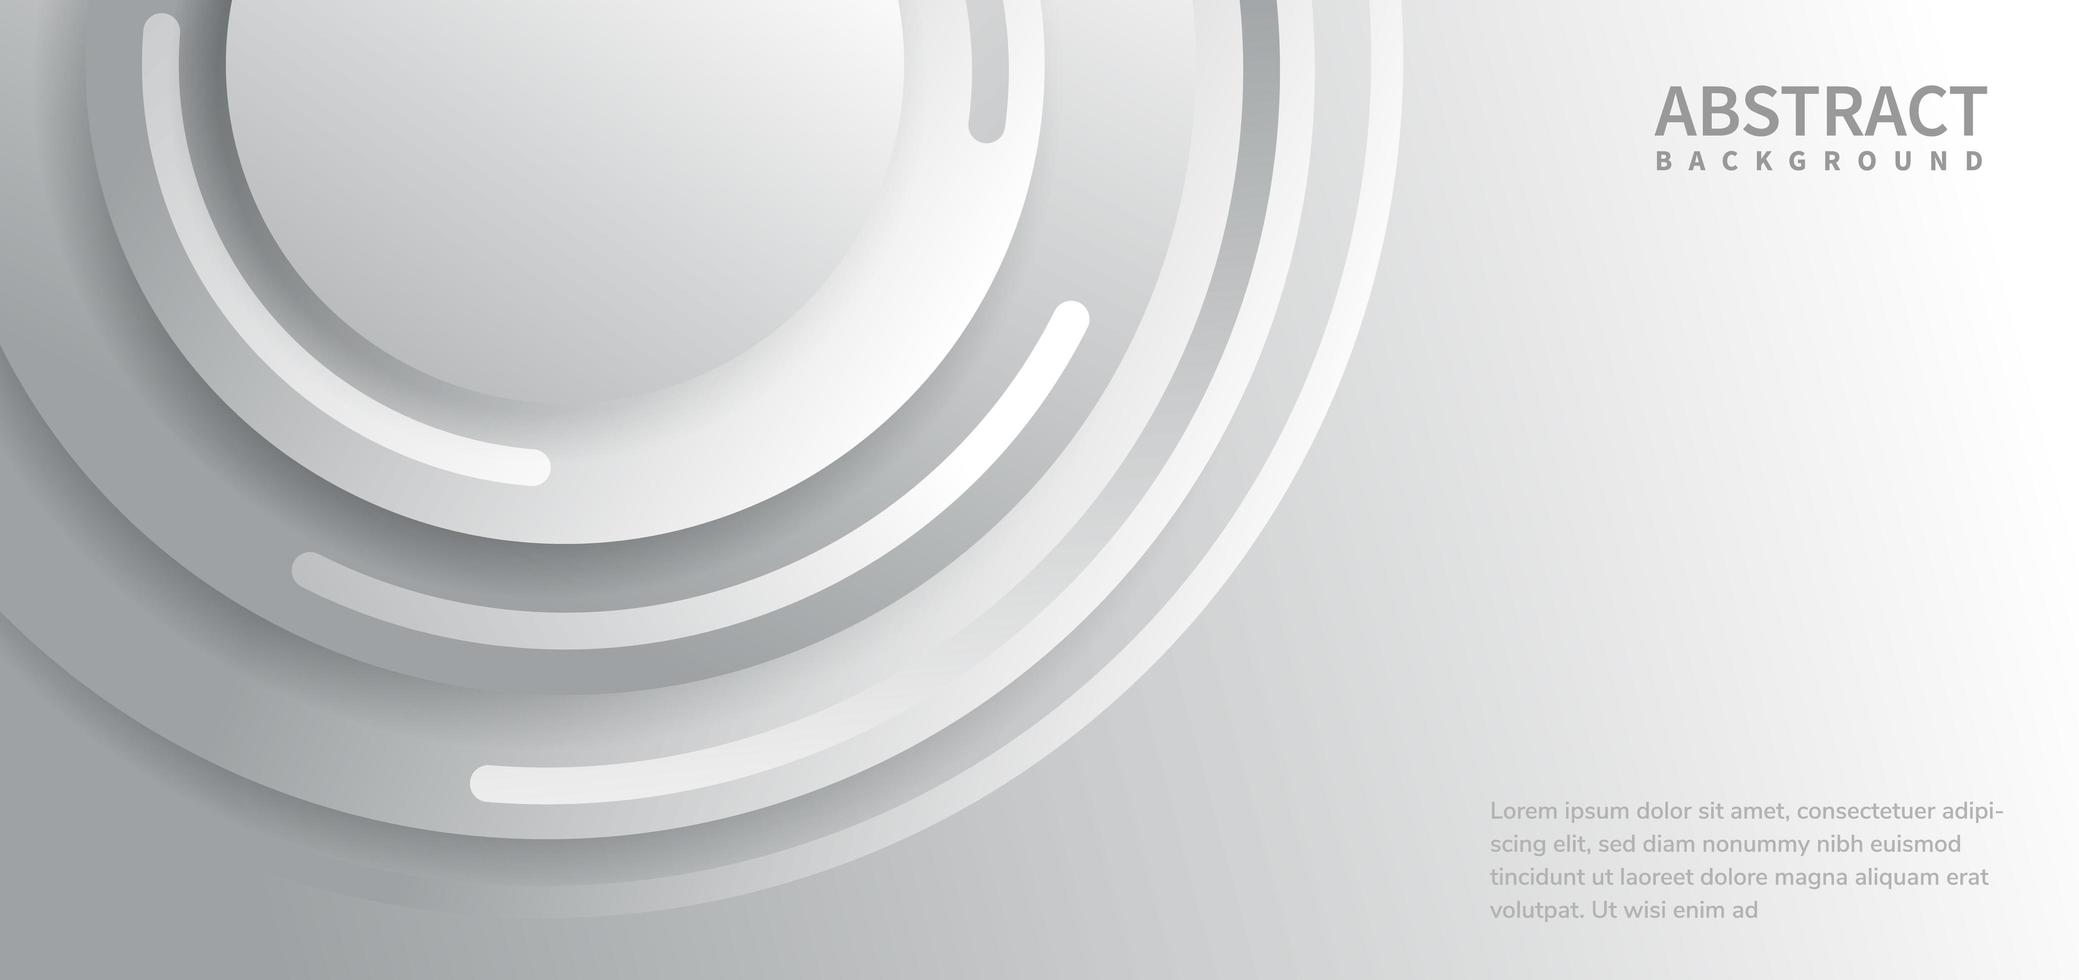 abstrakt bakgrund vit och grå med kurvor cirklar linjer överlappande med kopia utrymme för text. vektor